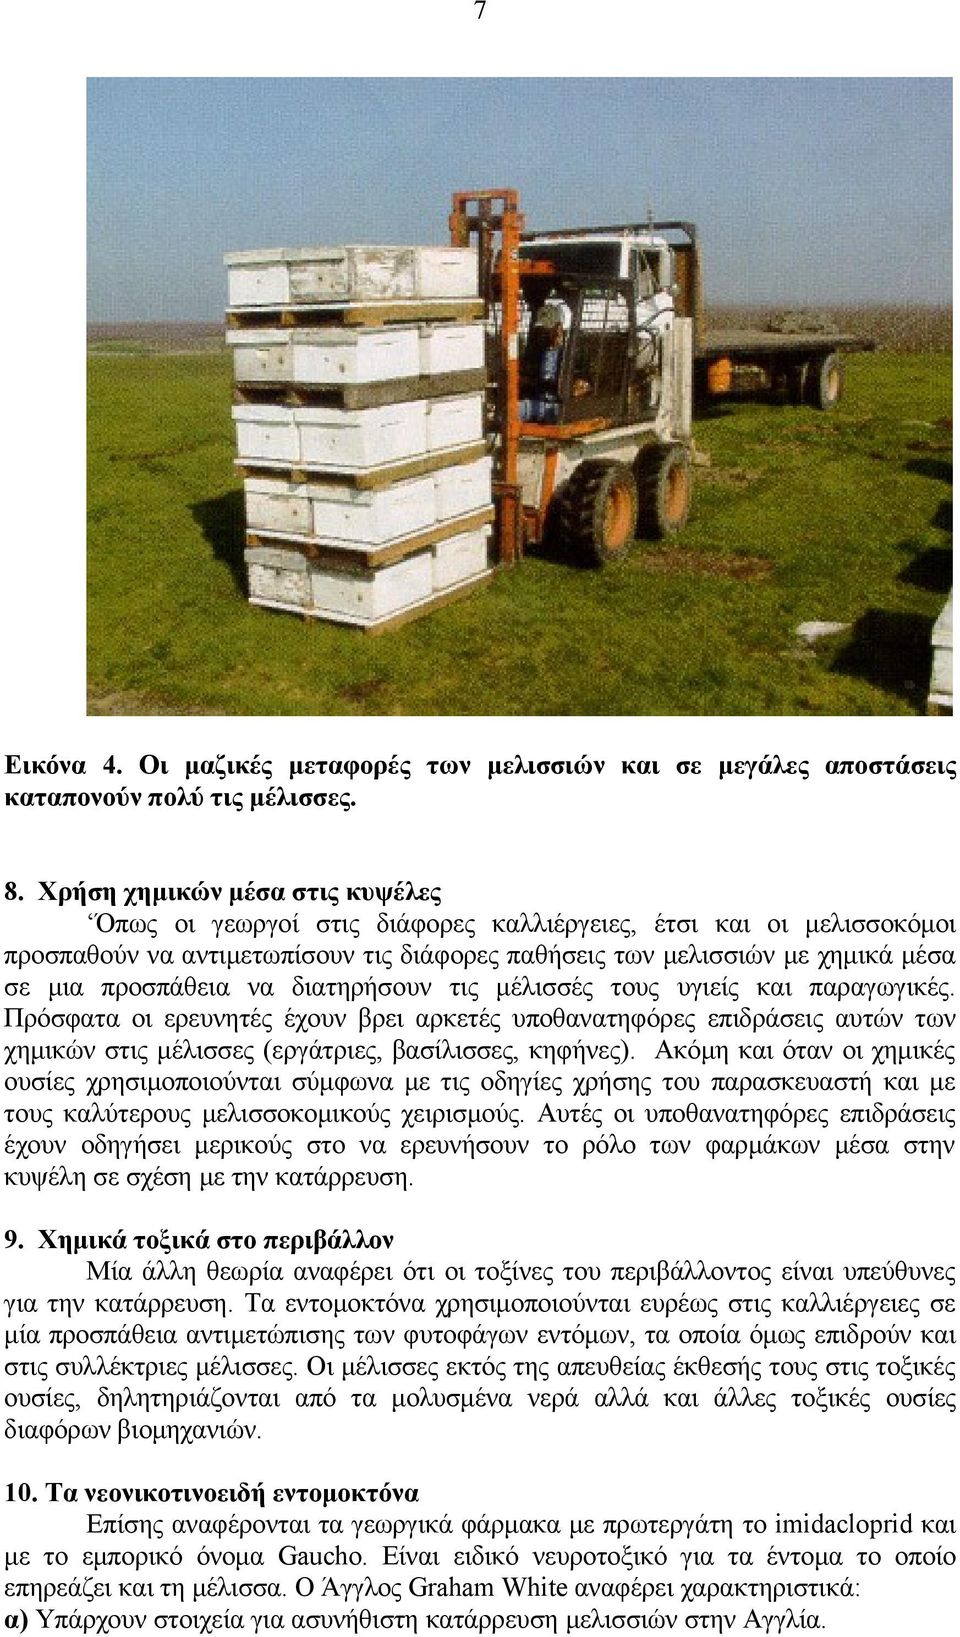 να διατηρήσουν τις μέλισσές τους υγιείς και παραγωγικές. Πρόσφατα οι ερευνητές έχουν βρει αρκετές υποθανατηφόρες επιδράσεις αυτών των χημικών στις μέλισσες (εργάτριες, βασίλισσες, κηφήνες).